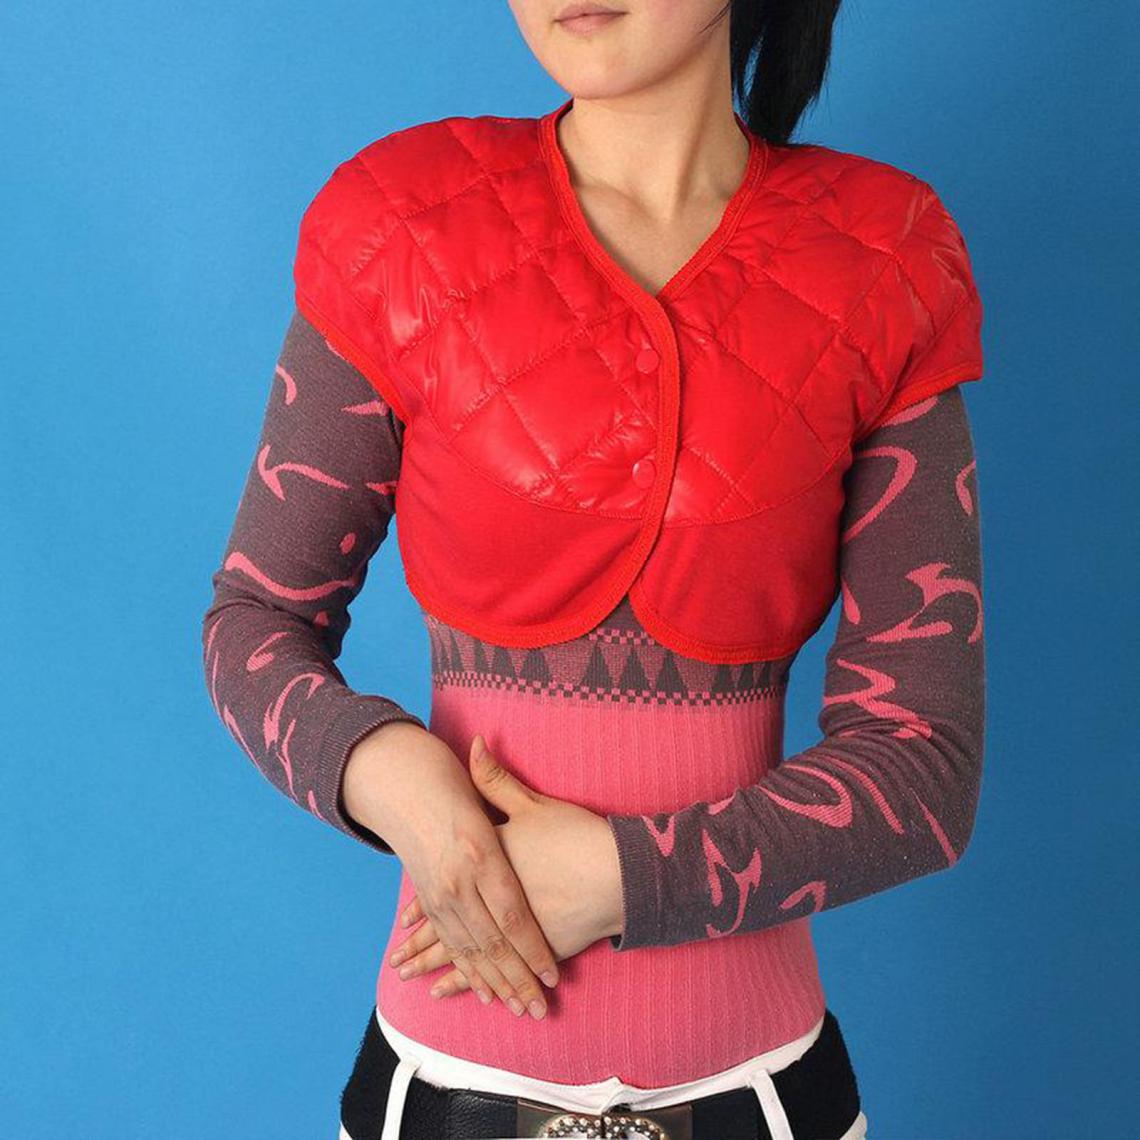 marque generique - Doudoune Femme Chaud Épaule Warmer Thermique Wrap Protector Rouge XXL - Couverture chauffante